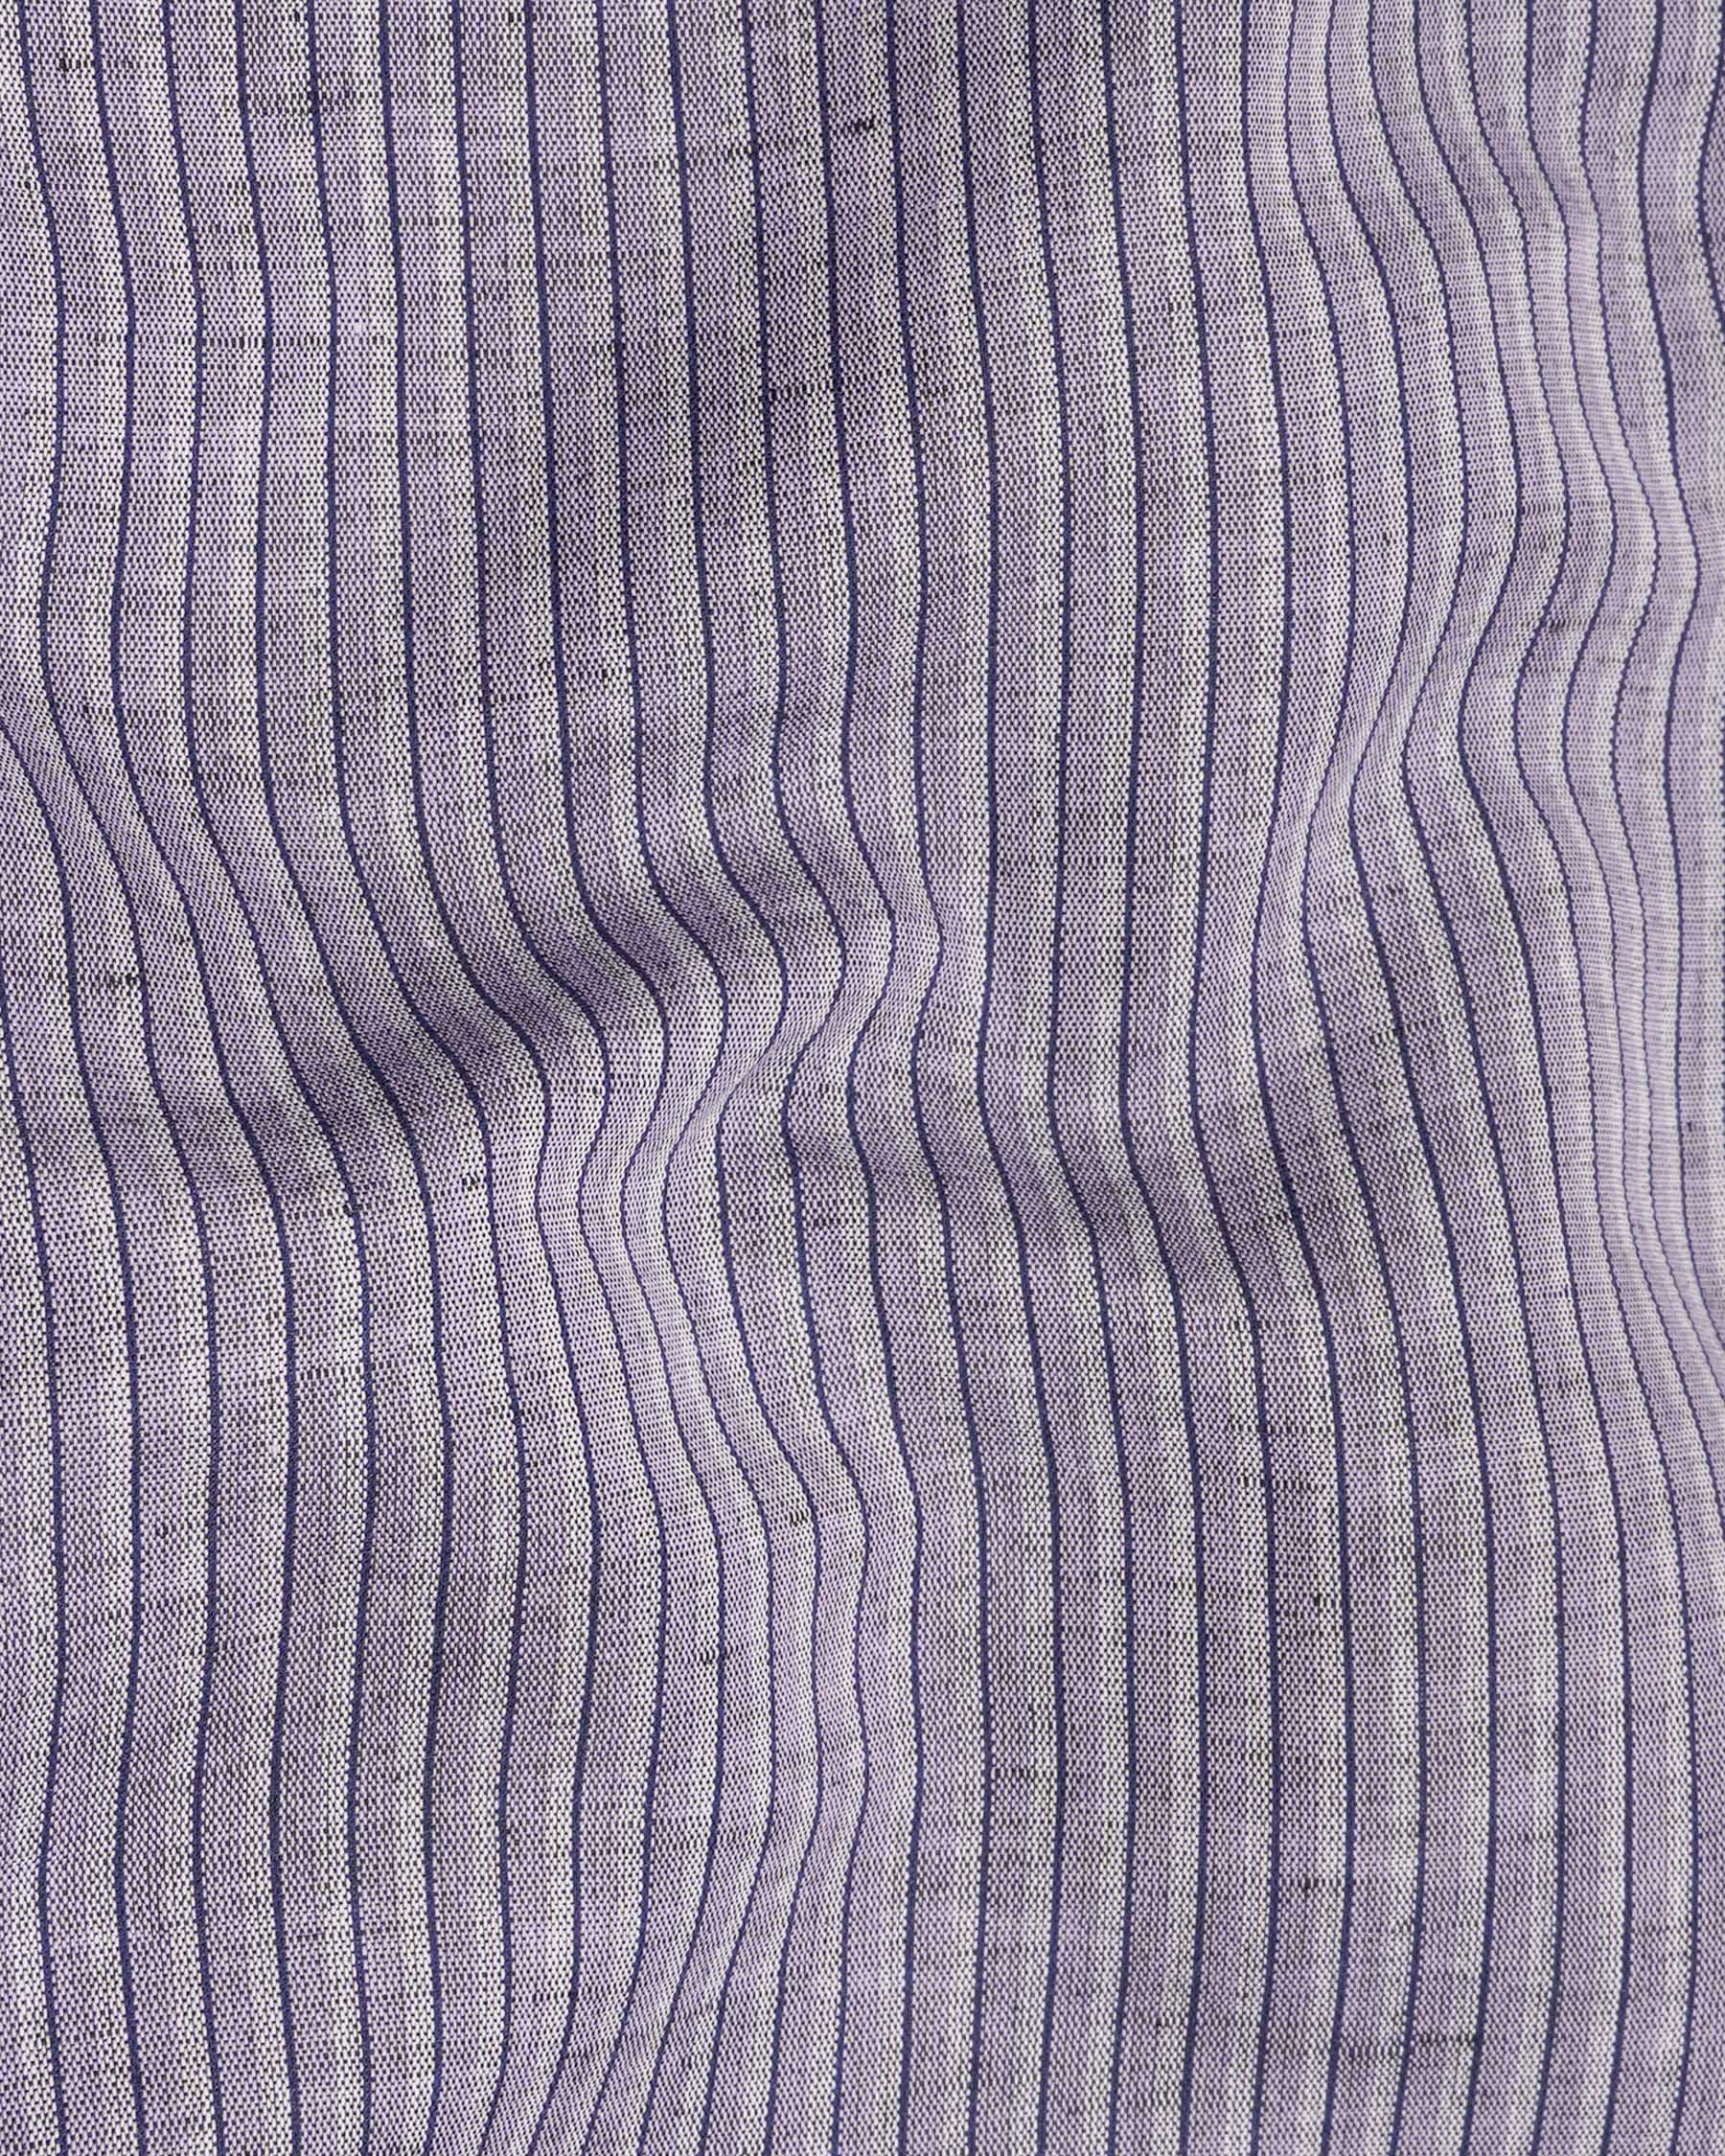 Venus Purple Pinstriped Luxurious Linen Shirt 7473-BLE-38, 7473-BLE-H-38, 7473-BLE-39, 7473-BLE-H-39, 7473-BLE-40, 7473-BLE-H-40, 7473-BLE-42, 7473-BLE-H-42, 7473-BLE-44, 7473-BLE-H-44, 7473-BLE-46, 7473-BLE-H-46, 7473-BLE-48, 7473-BLE-H-48, 7473-BLE-50, 7473-BLE-H-50, 7473-BLE-52, 7473-BLE-H-52